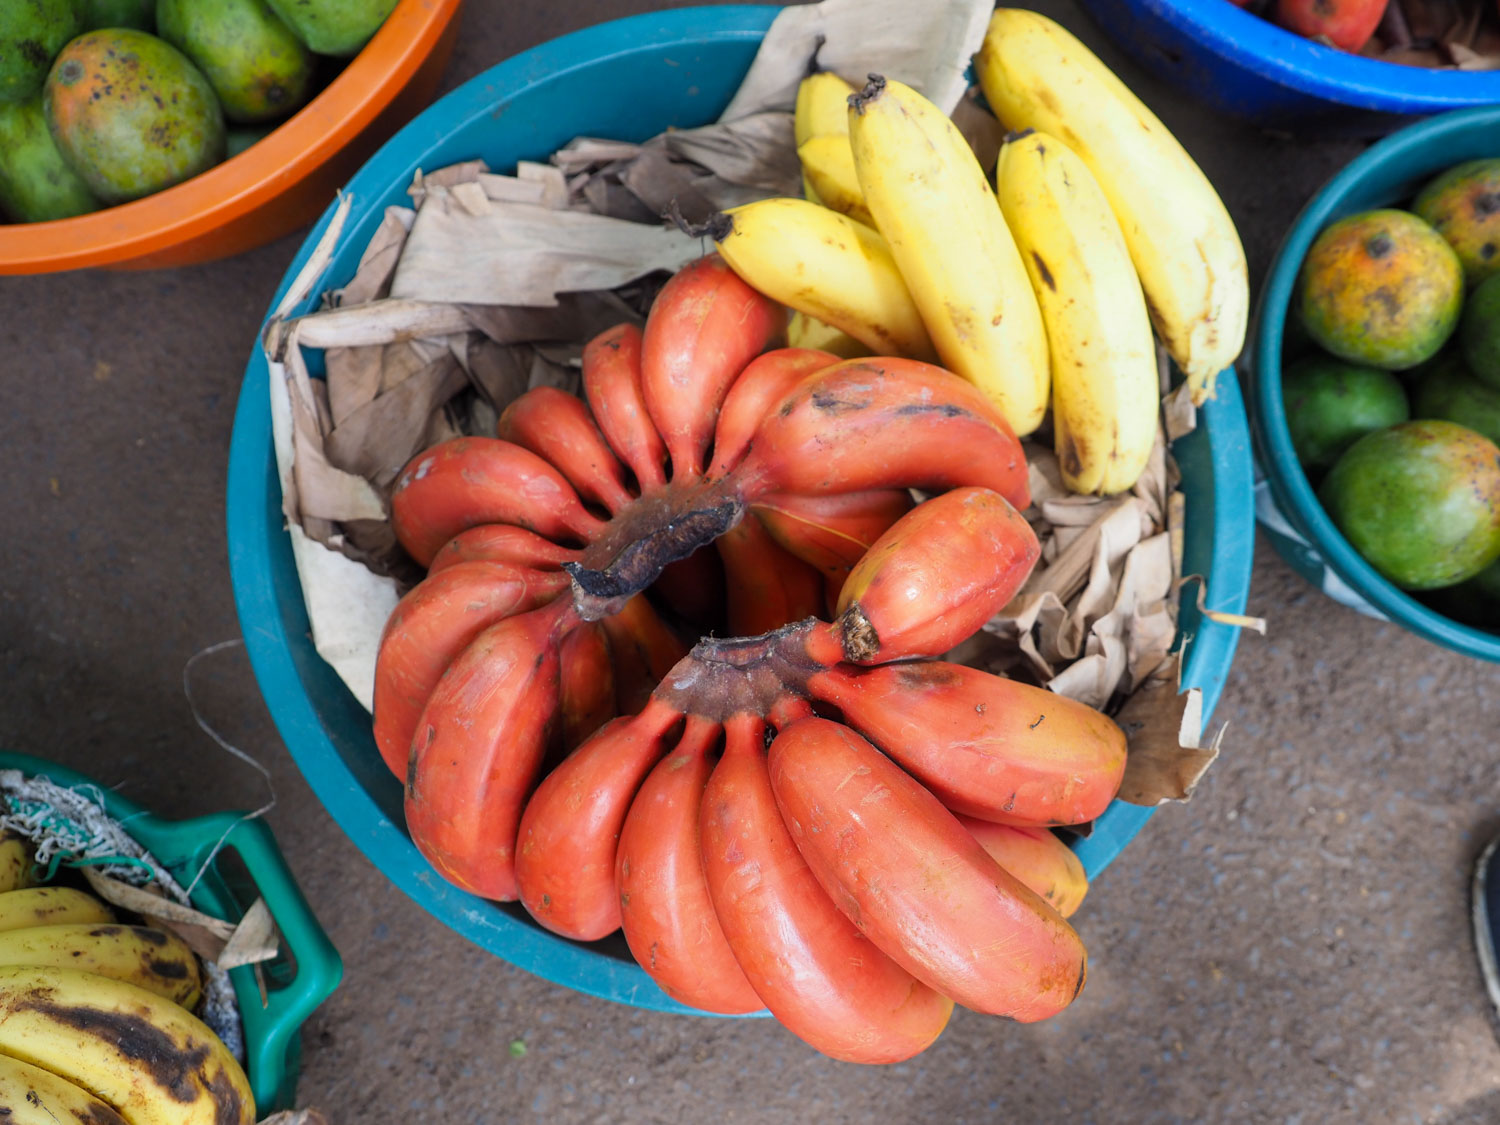 名物の赤バナナ。ムトワンブで清算されるバナナには、赤バナナ、黄バナナ、緑バナナと3種類があります。